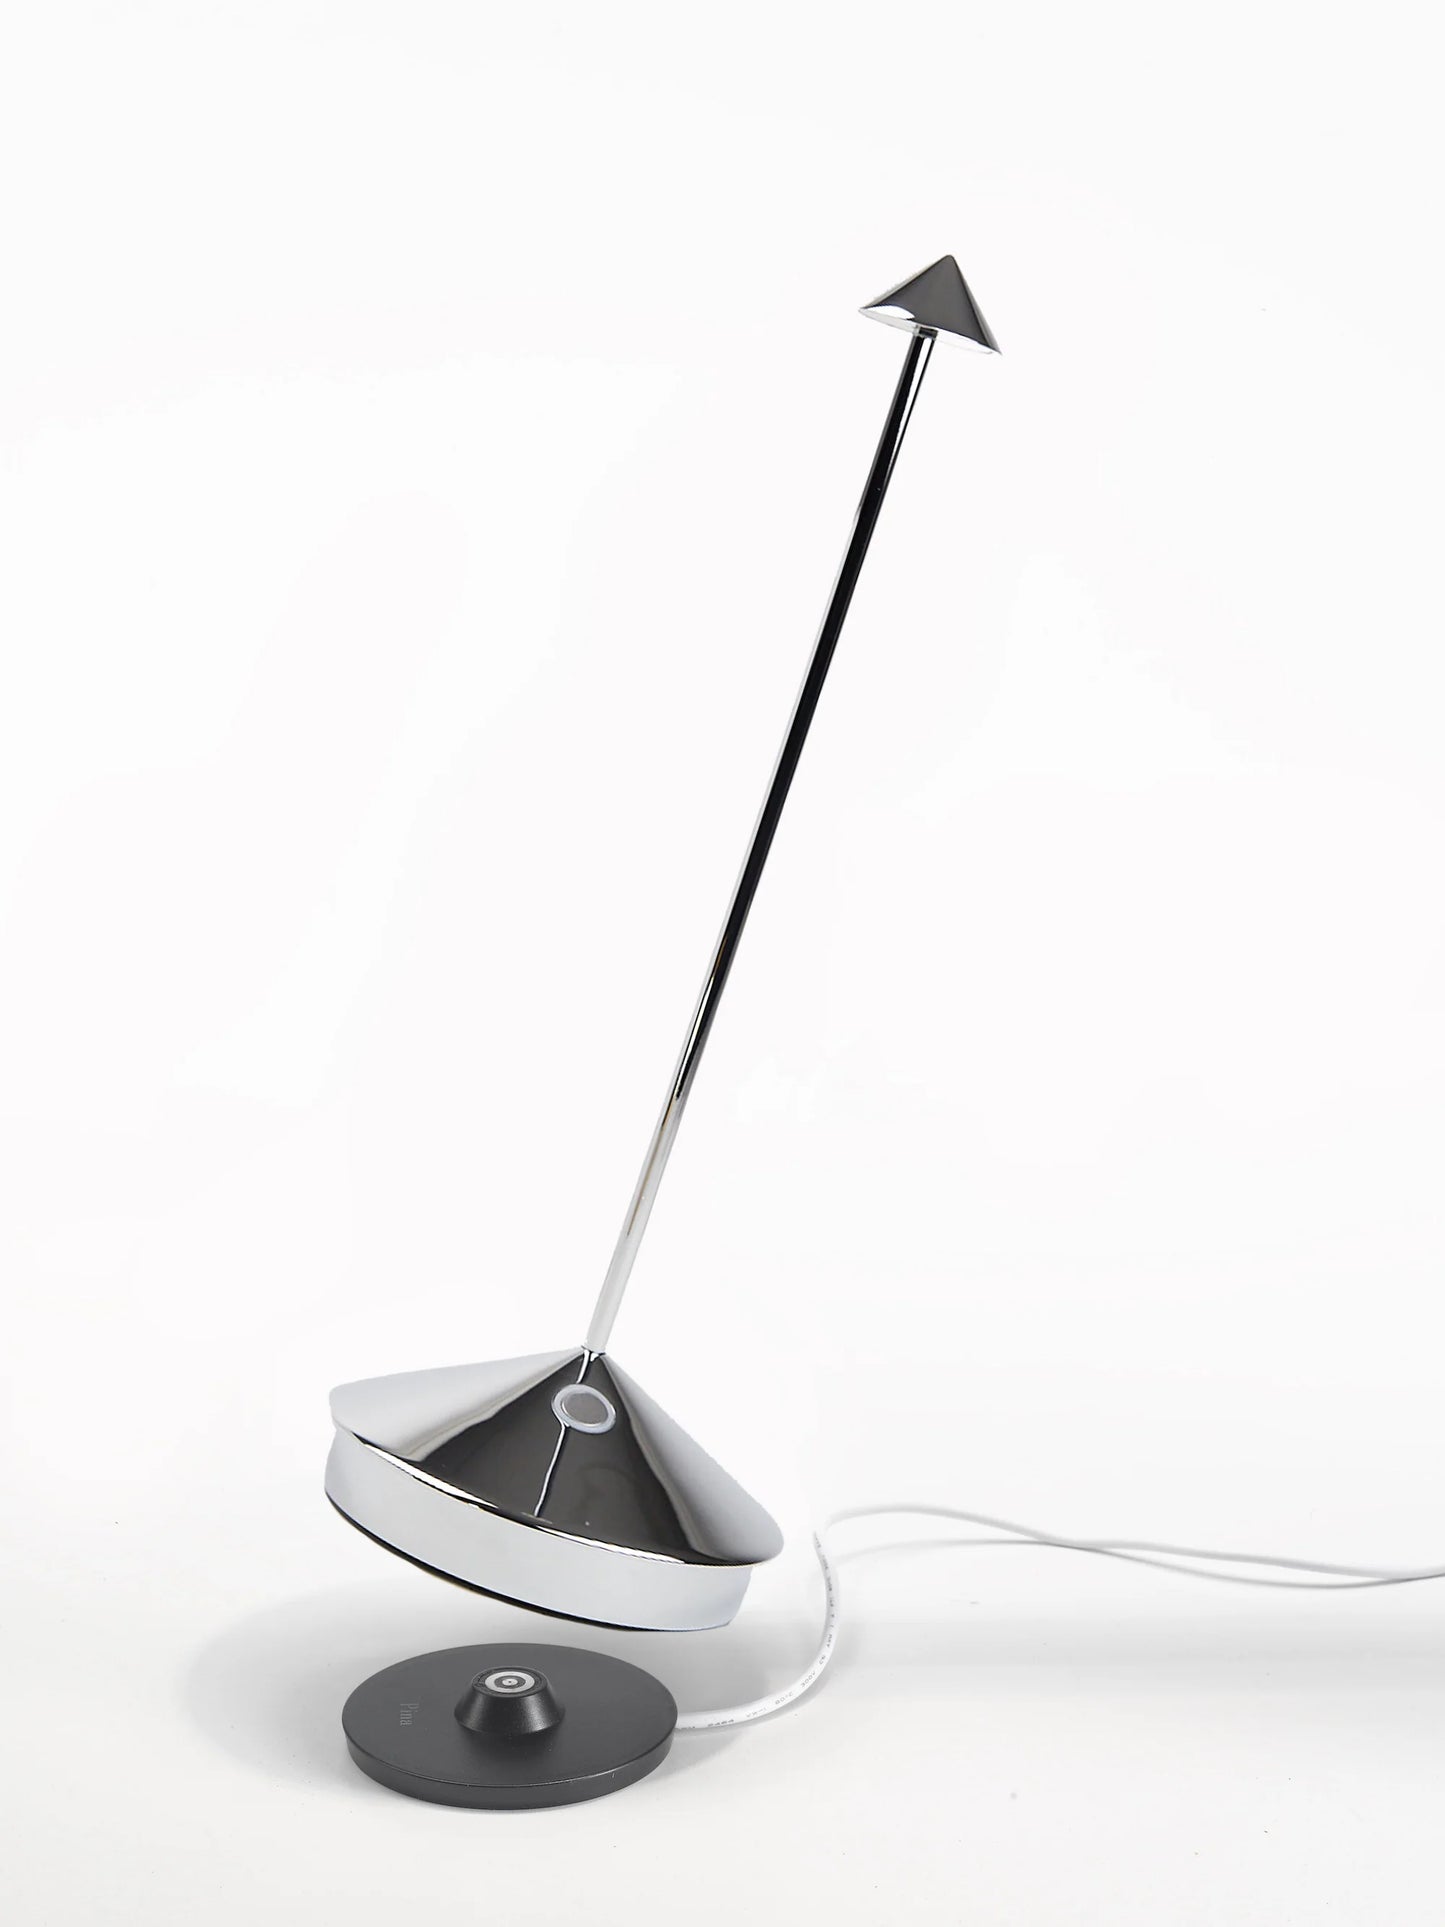 Pina Pro Cordless LED Lamp